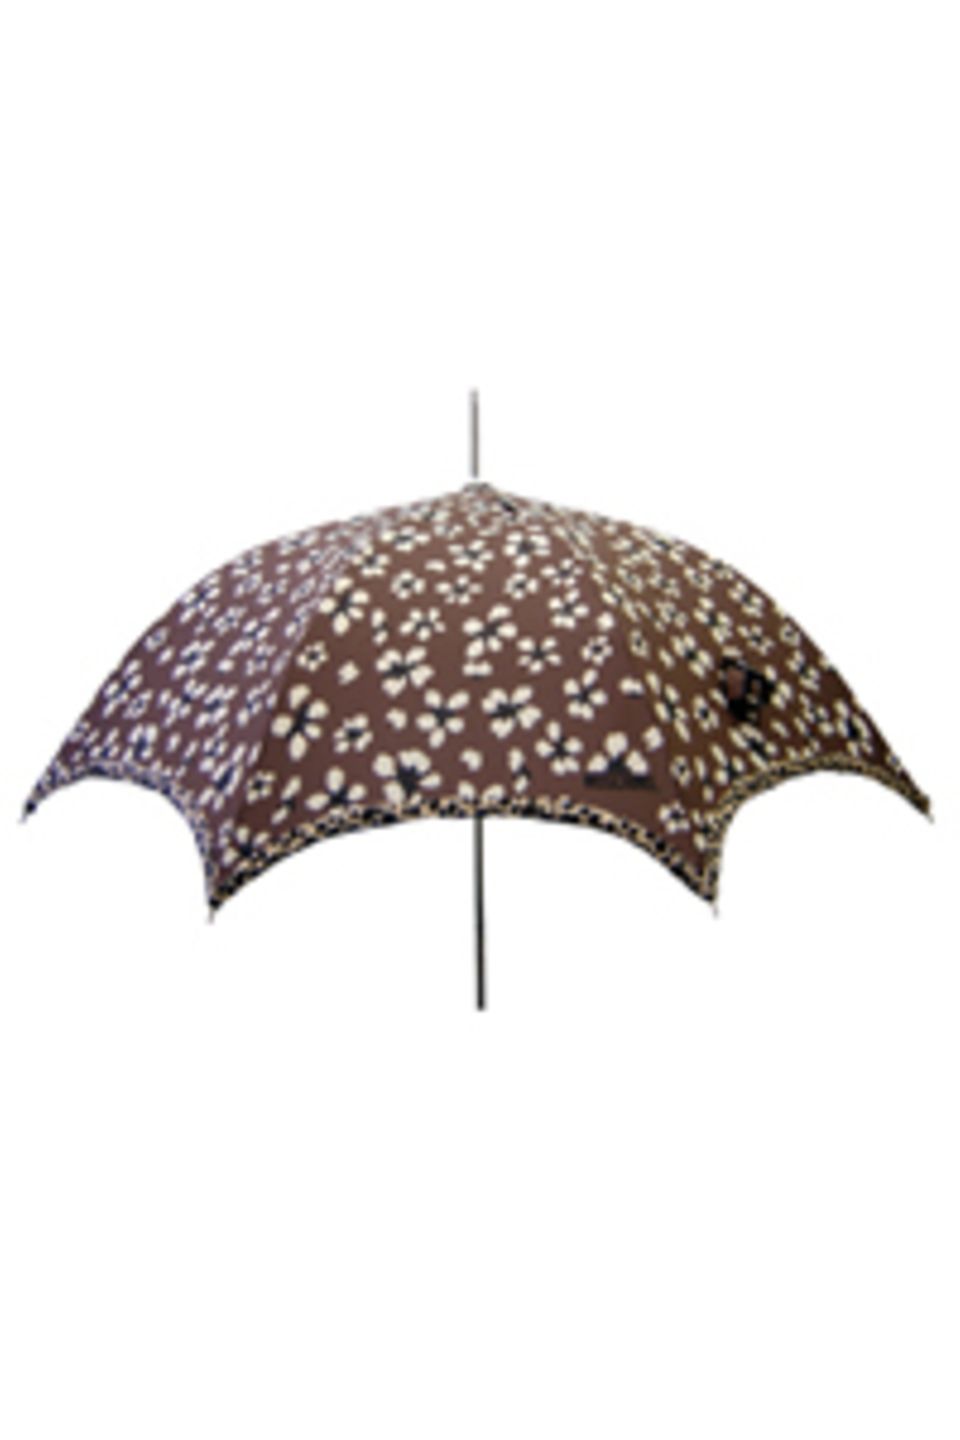 Regenschirm mit Leoparden-Muster von Moschino, um 85 Euro. Zu Bestellen über www.regenschirme.de